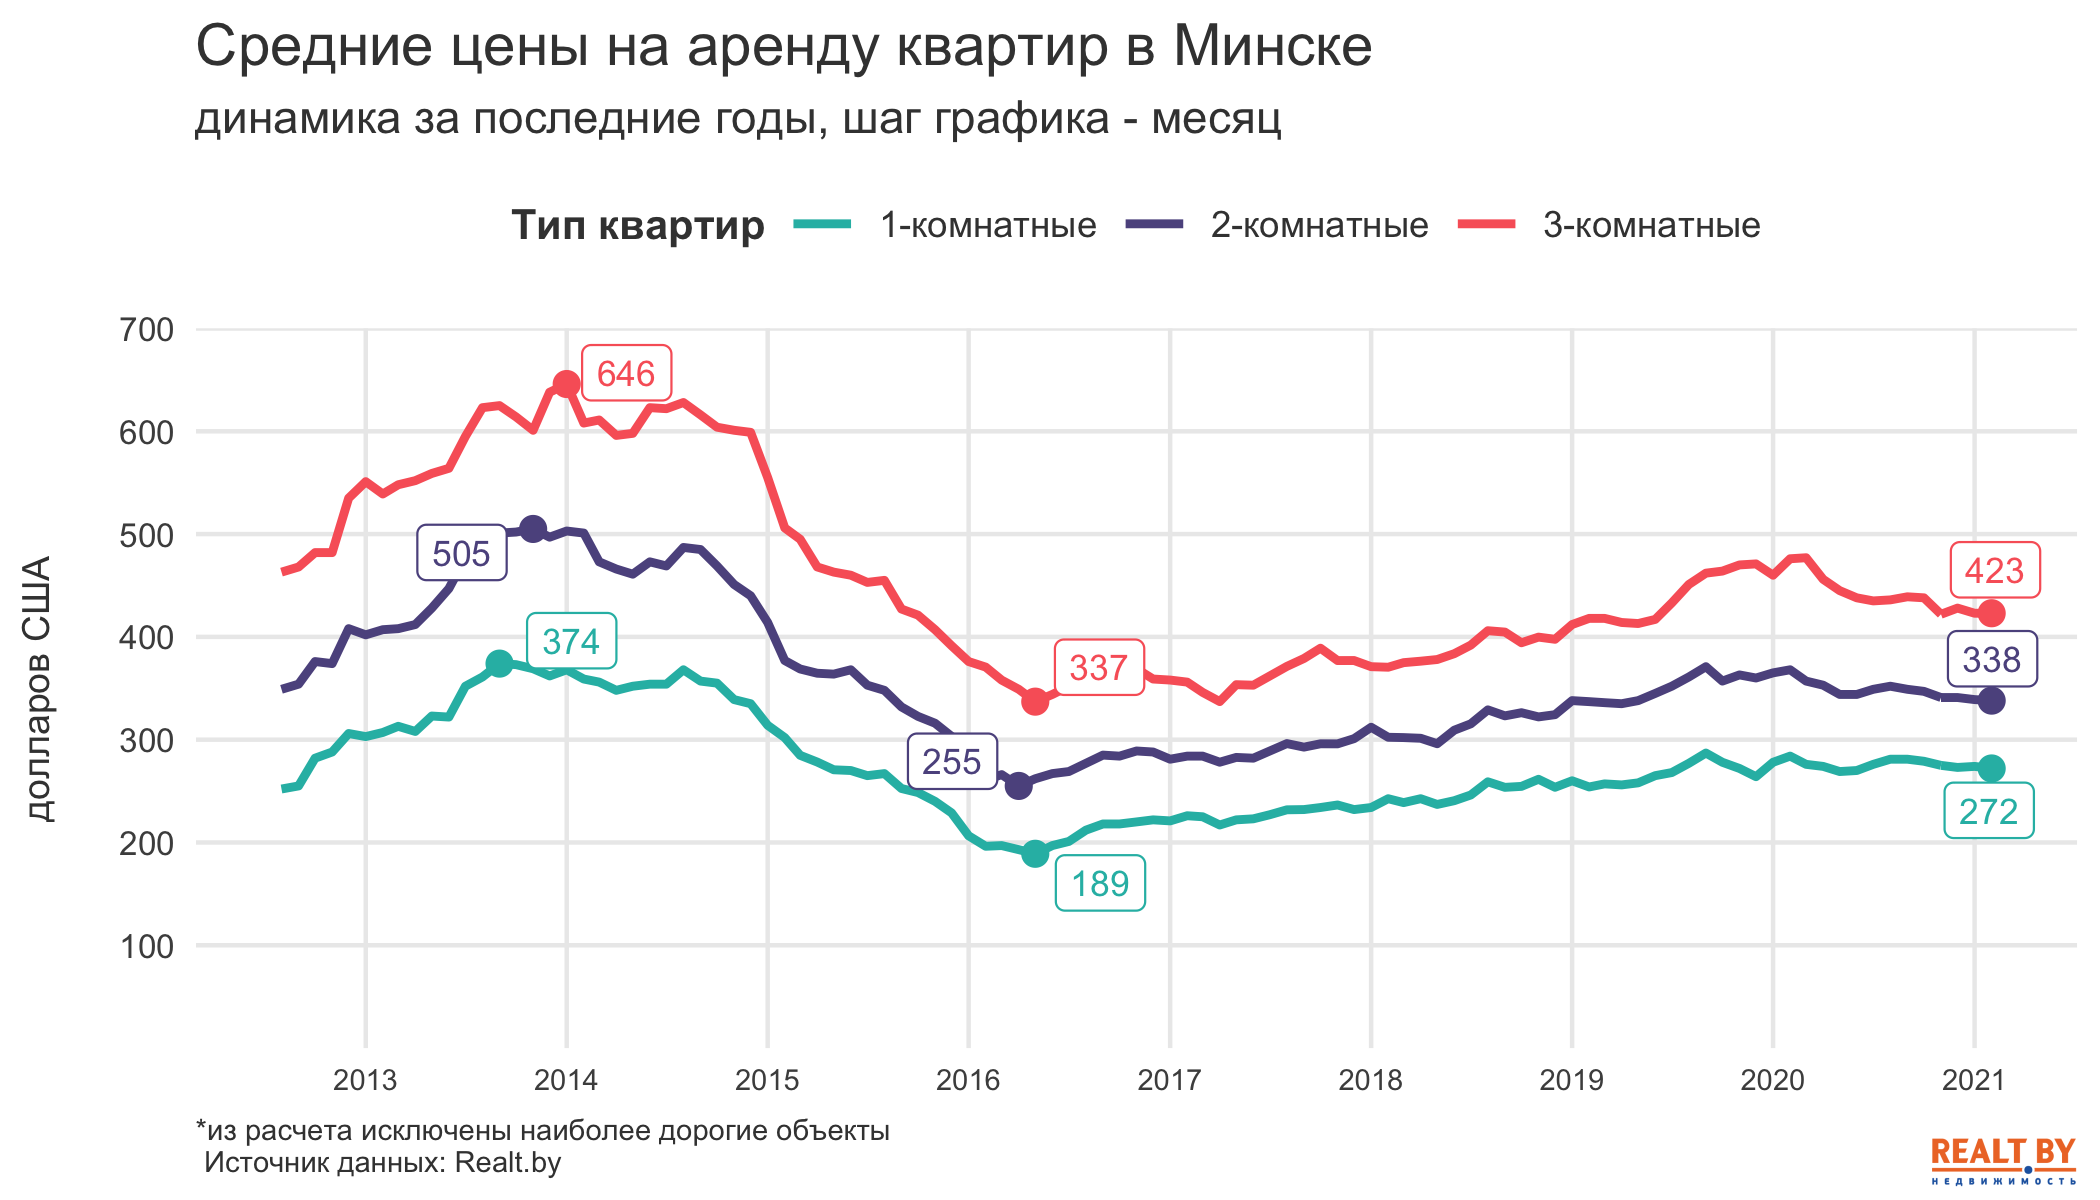 Цены застыли, а количество объектов снова растет. Обзор рынка аренды квартир в Минске за февраль 2021 года